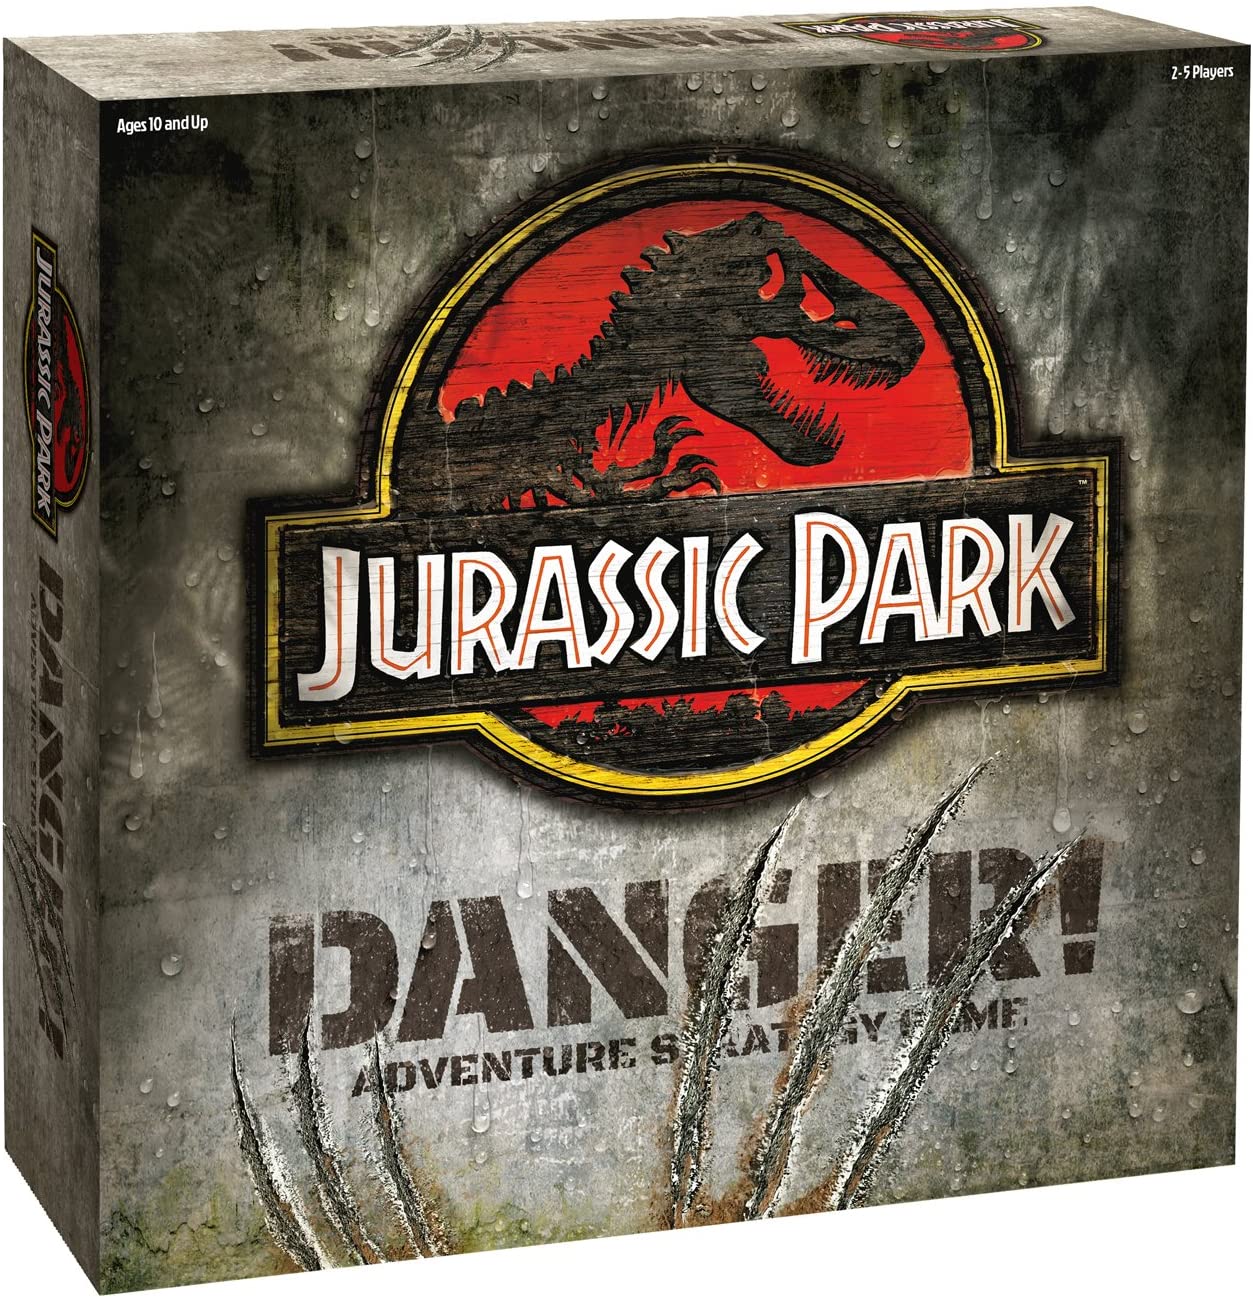 Jurassic Park Danger Game